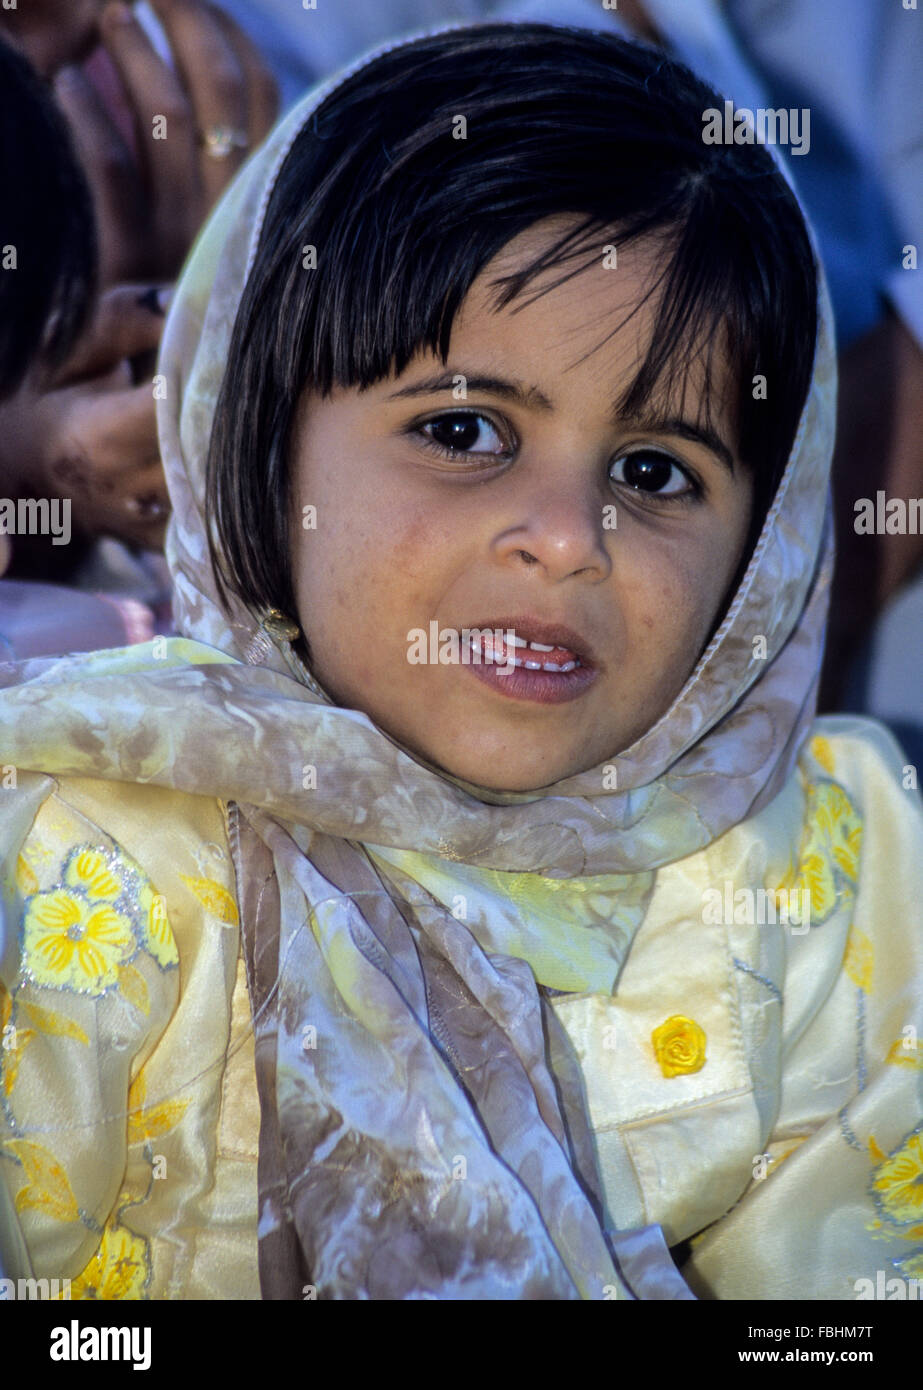 Sur, Oman. Young Omani Girl Stock Photo - Alamy